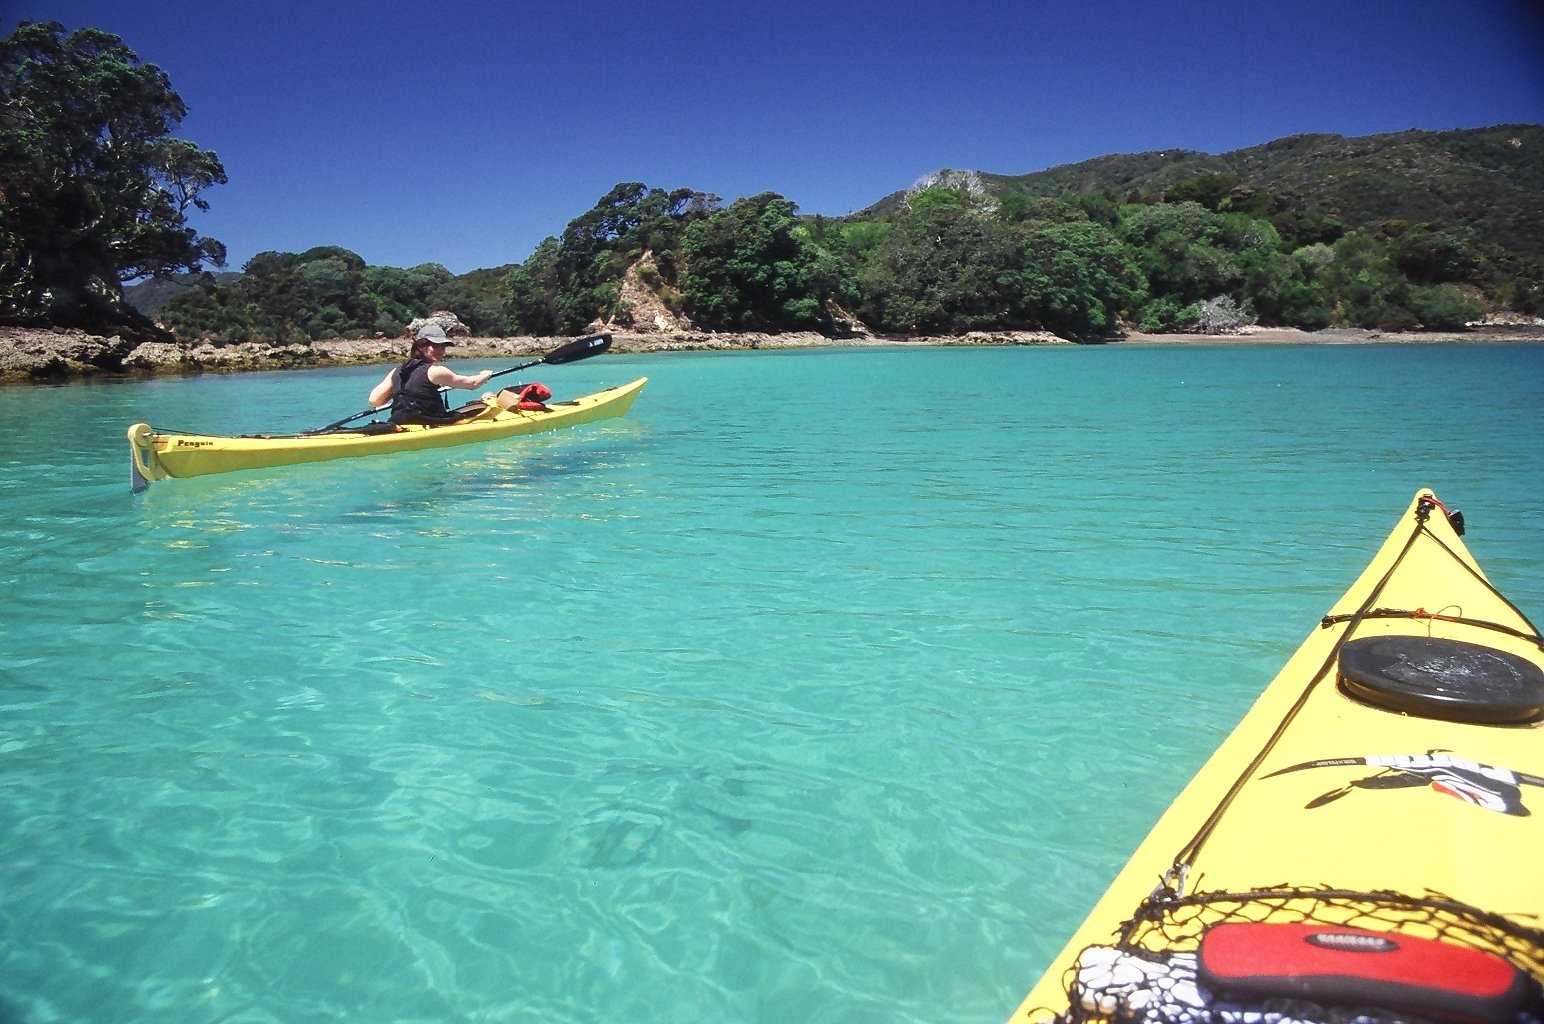 Kayak through the aquamarine waters around the Bay of Islands